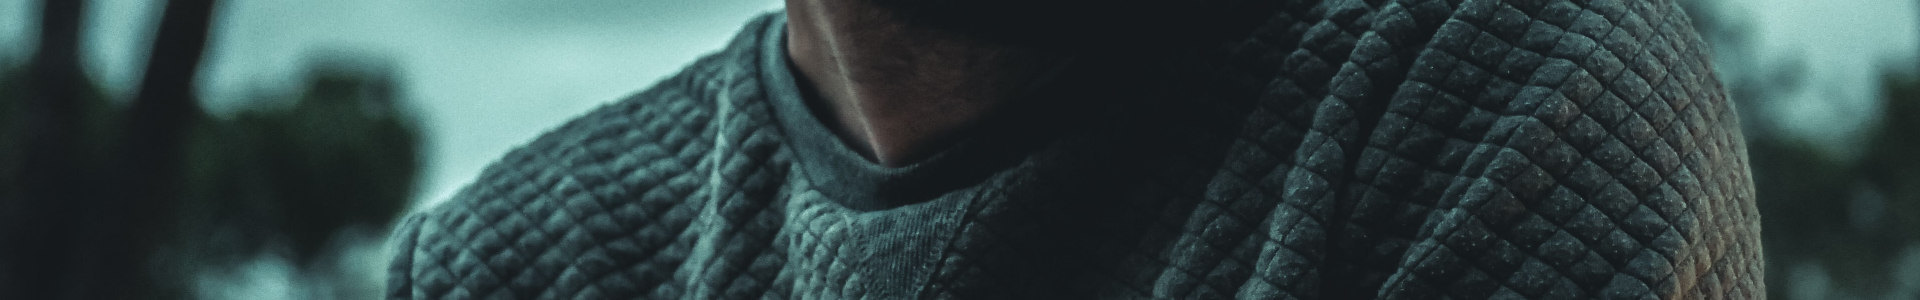 Close-up von Mann mit grauem Pullover